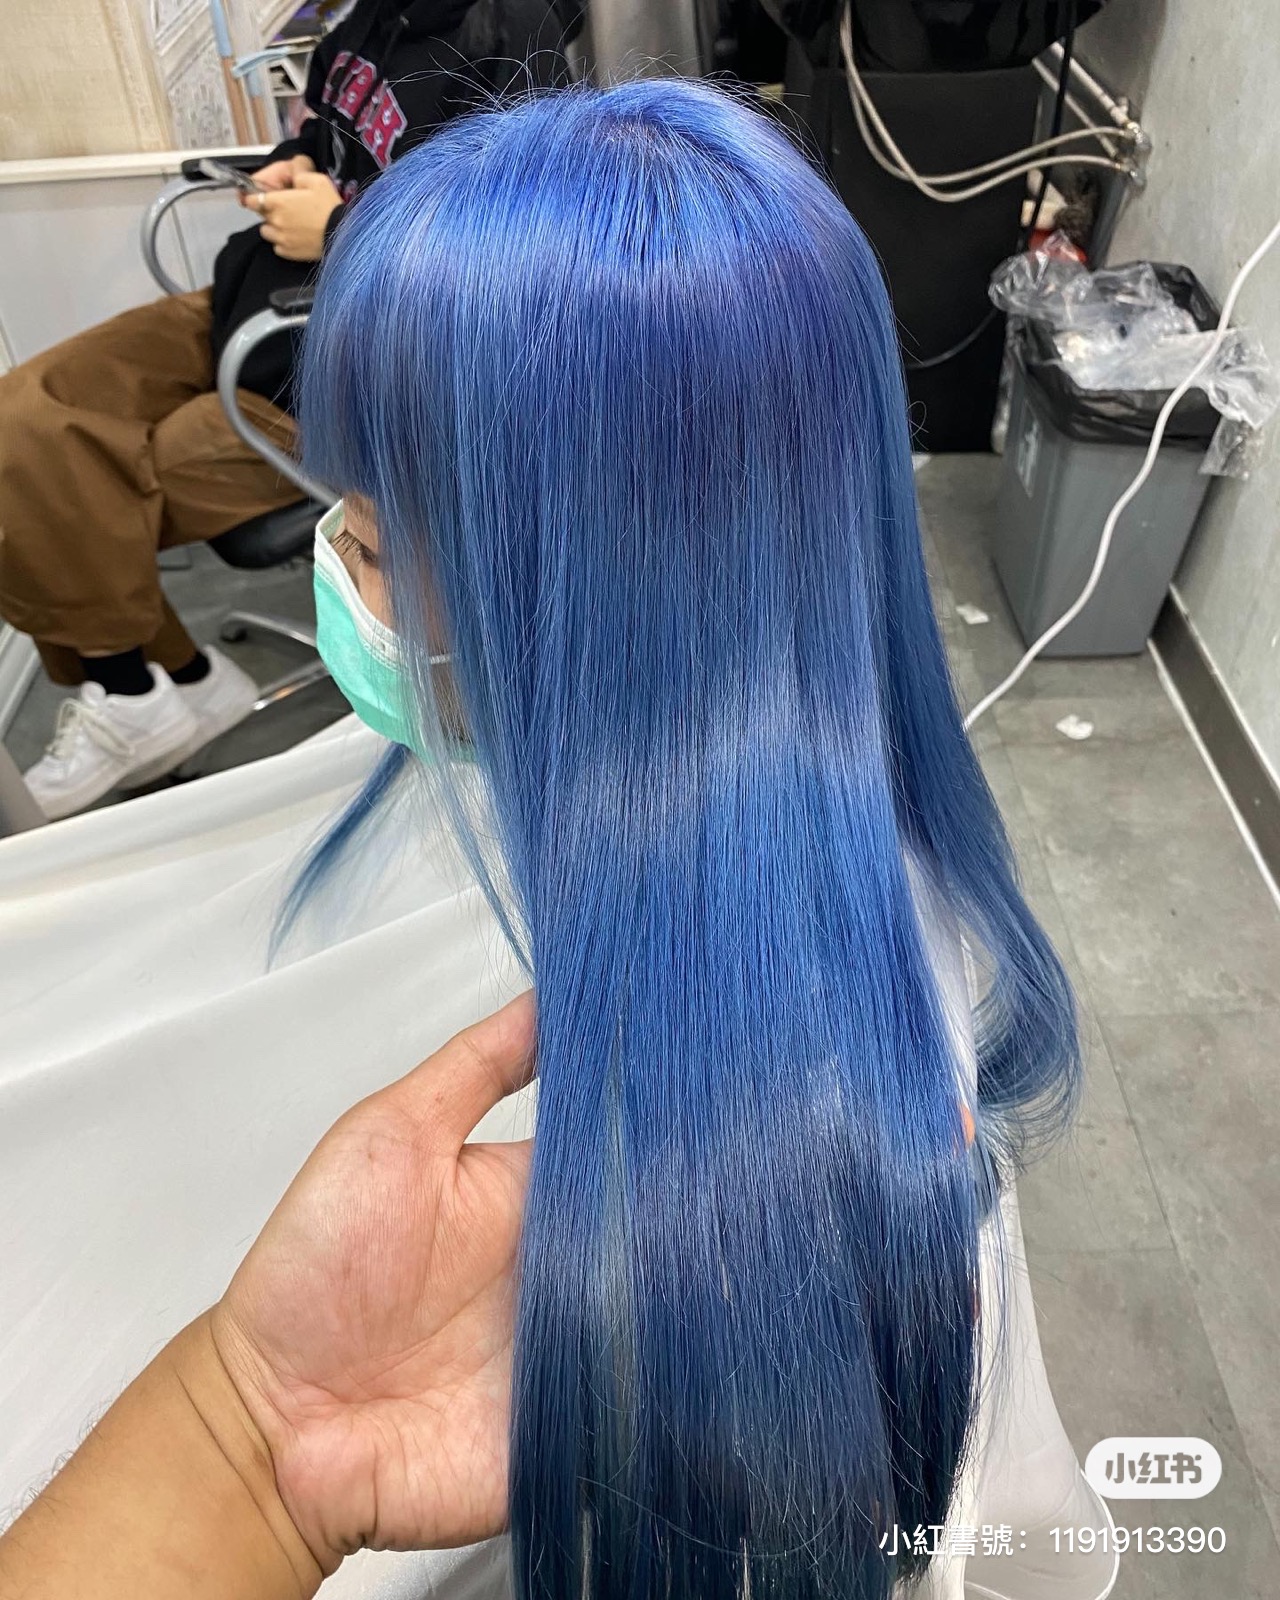 髮型作品参考:藍